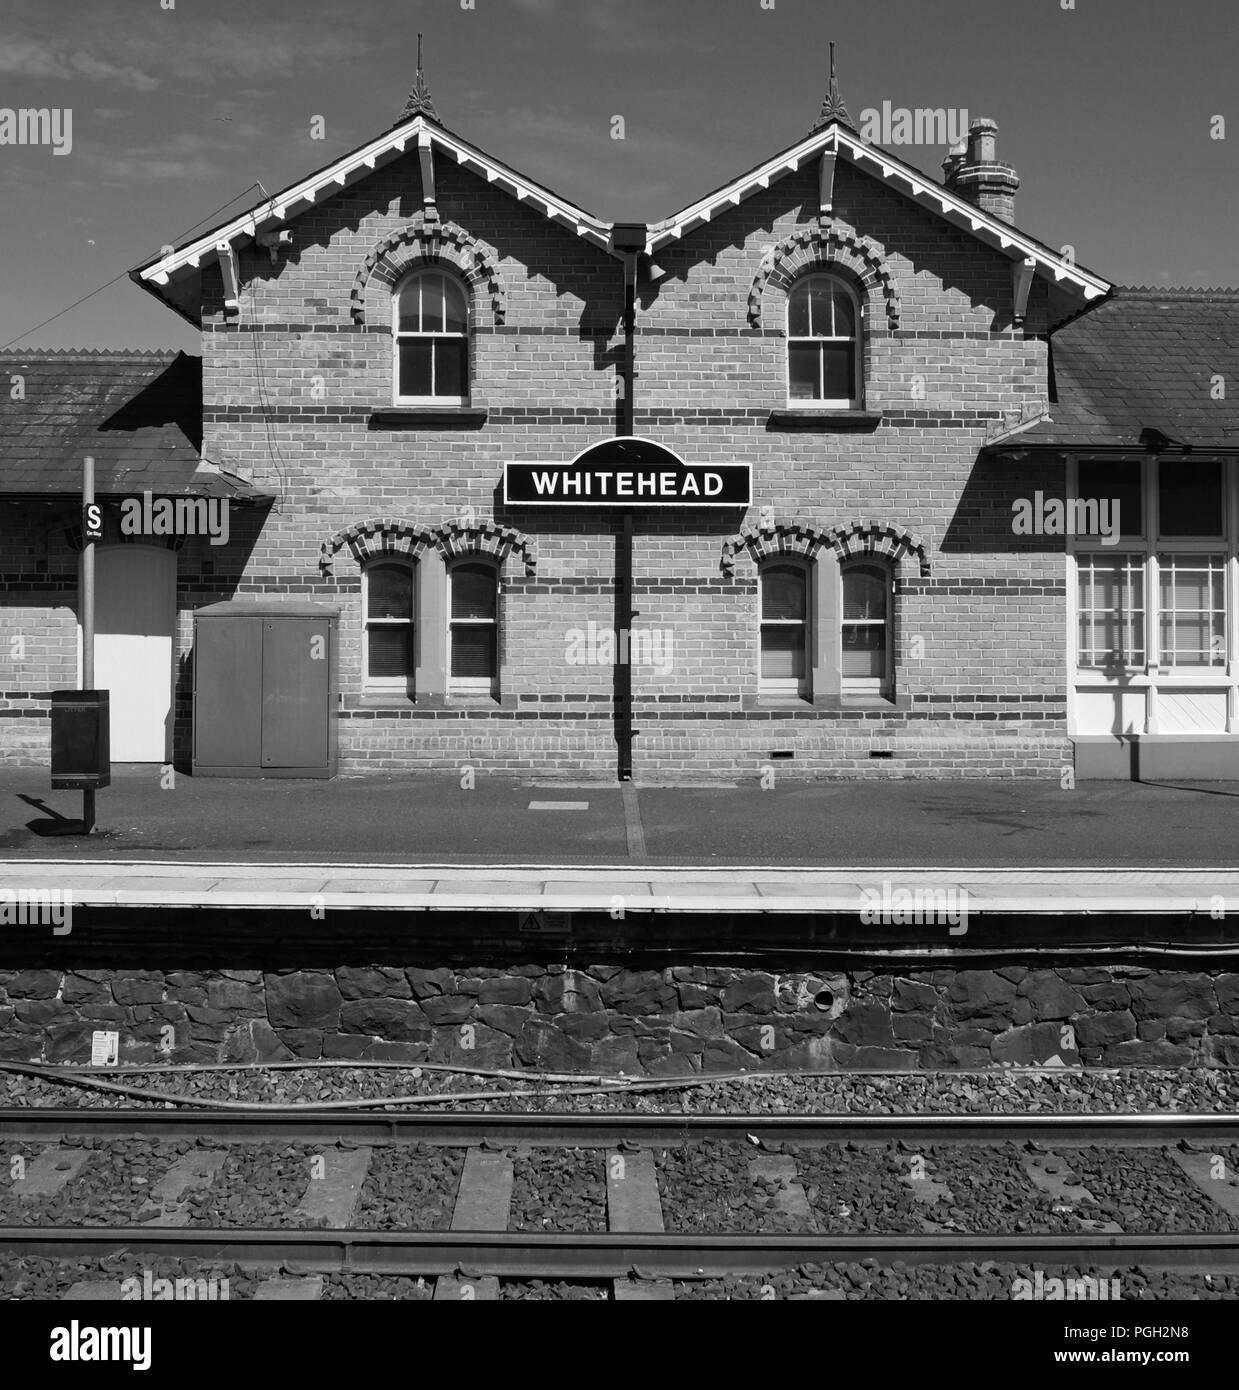 Railway station, Whitehead, County Antrim. Stock Photo